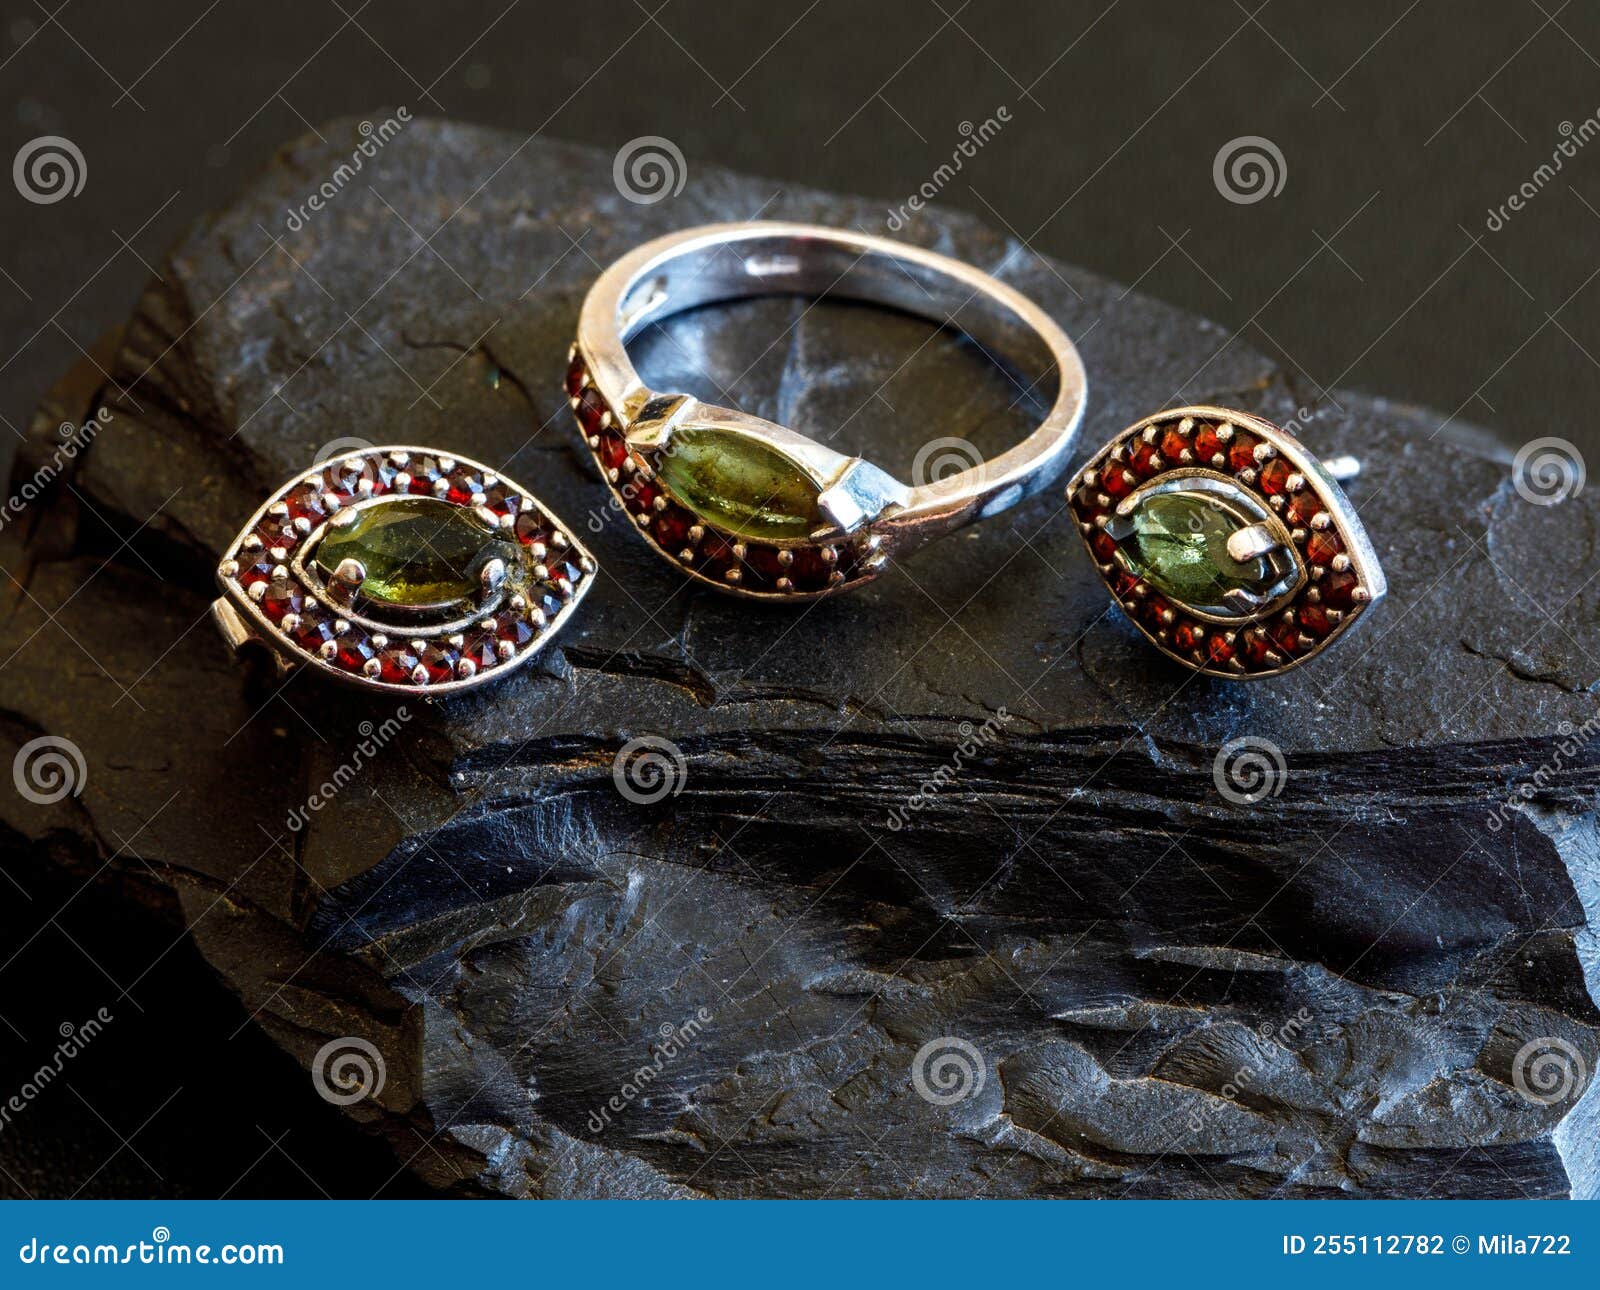 women s jewelry set earrings eye shape ring czech red garnet green moldavit vltavin gemstone women s jewelry 255112782